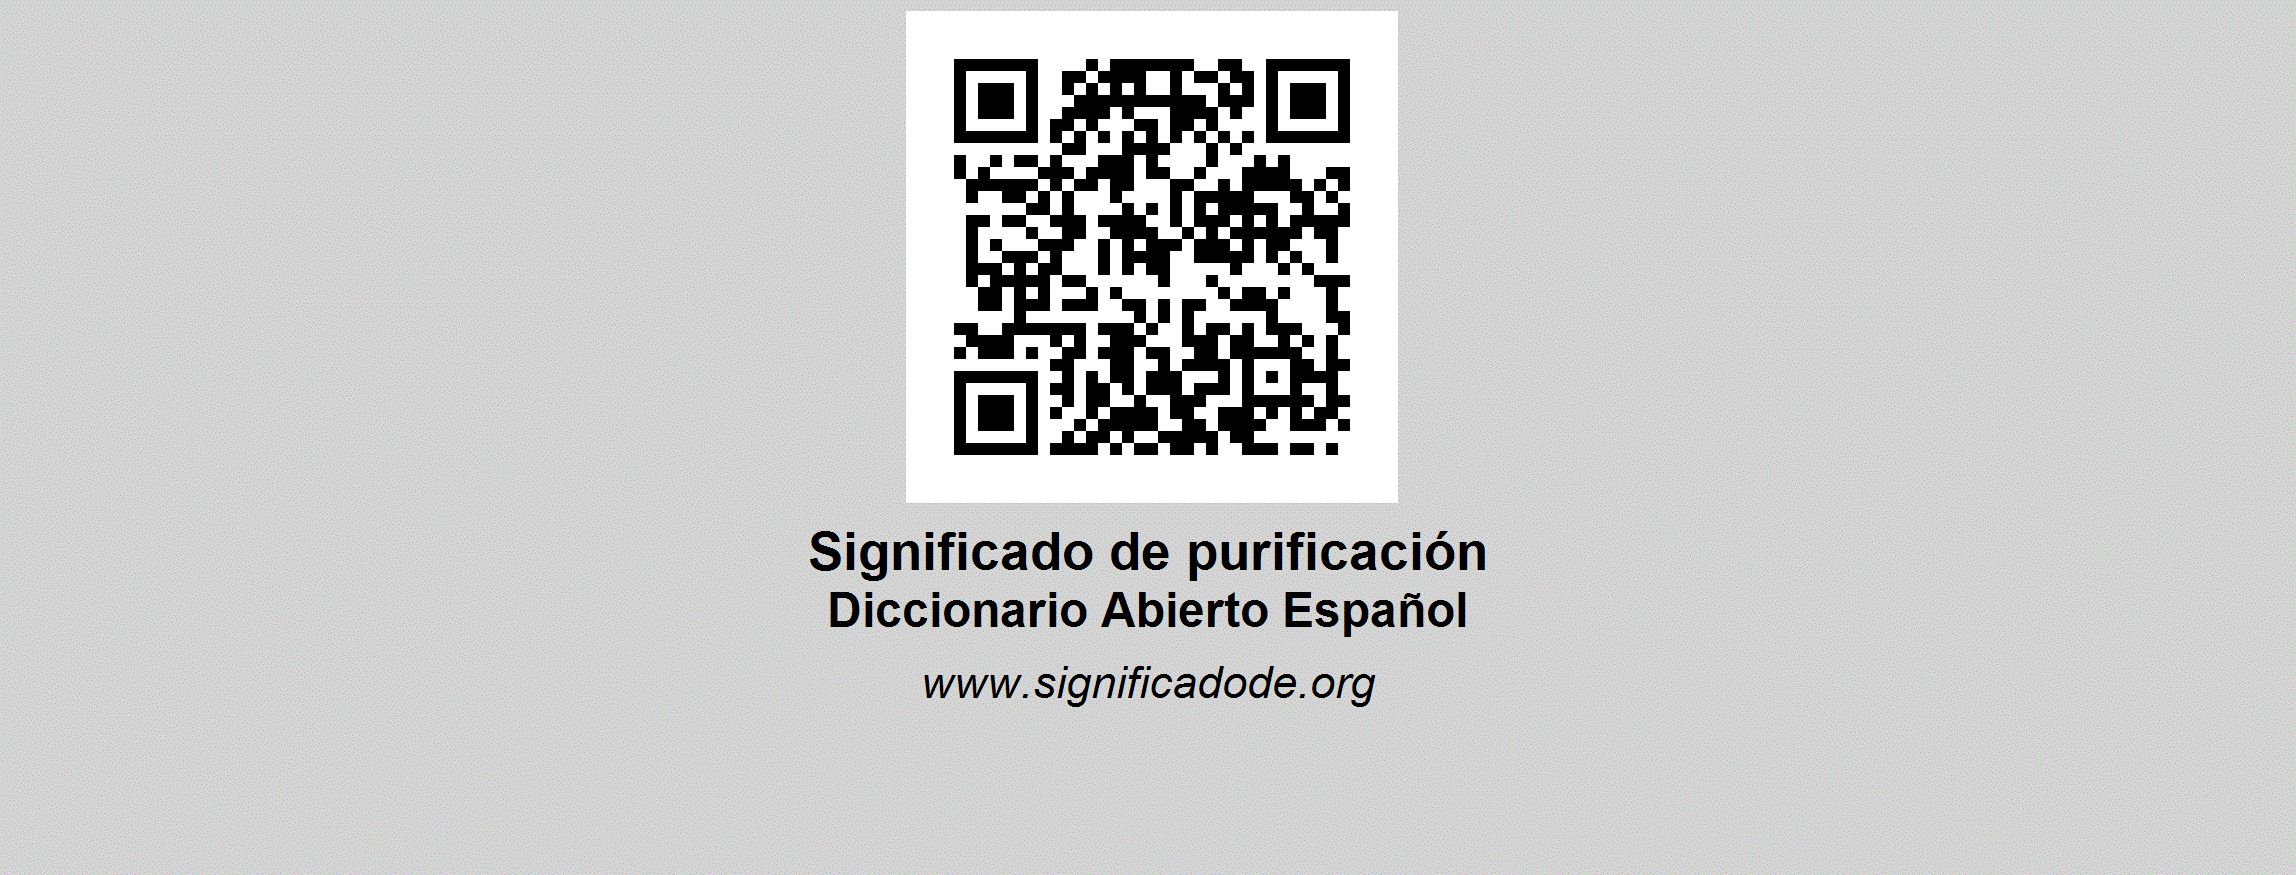 fito-purificaci-n-desarrollo-foto-gratis-en-pixabay-pixabay